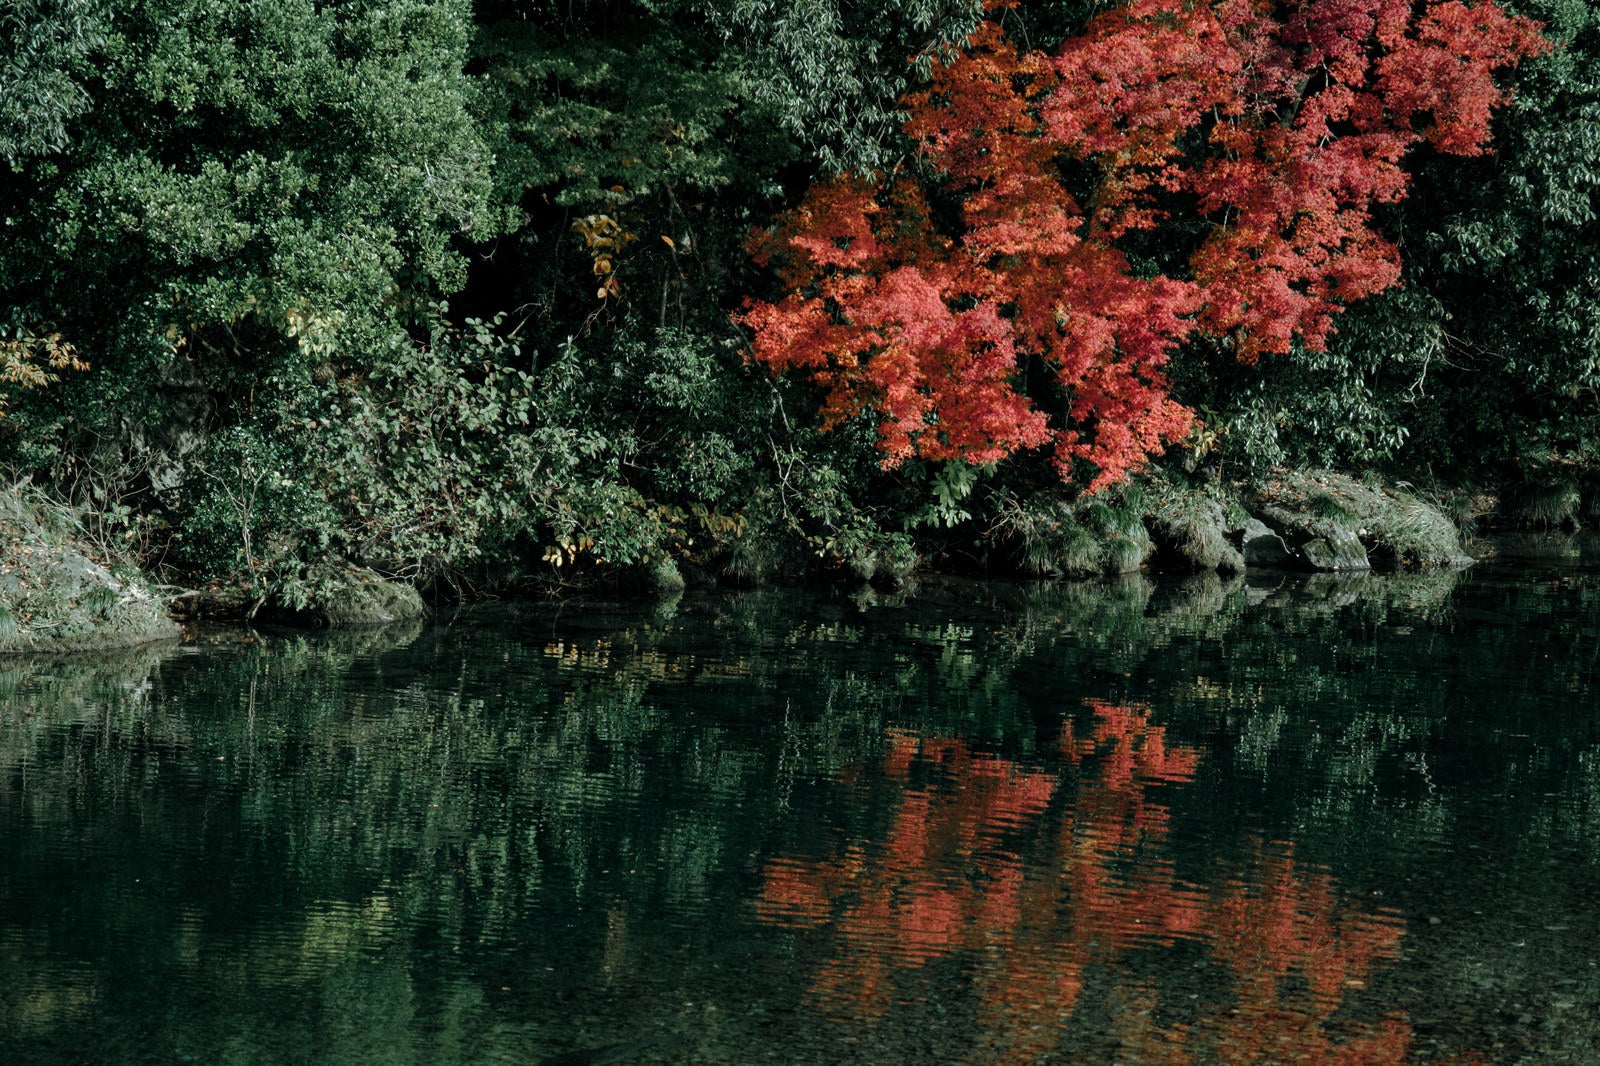 「紅葉したもみじと水面に映る木々」の写真